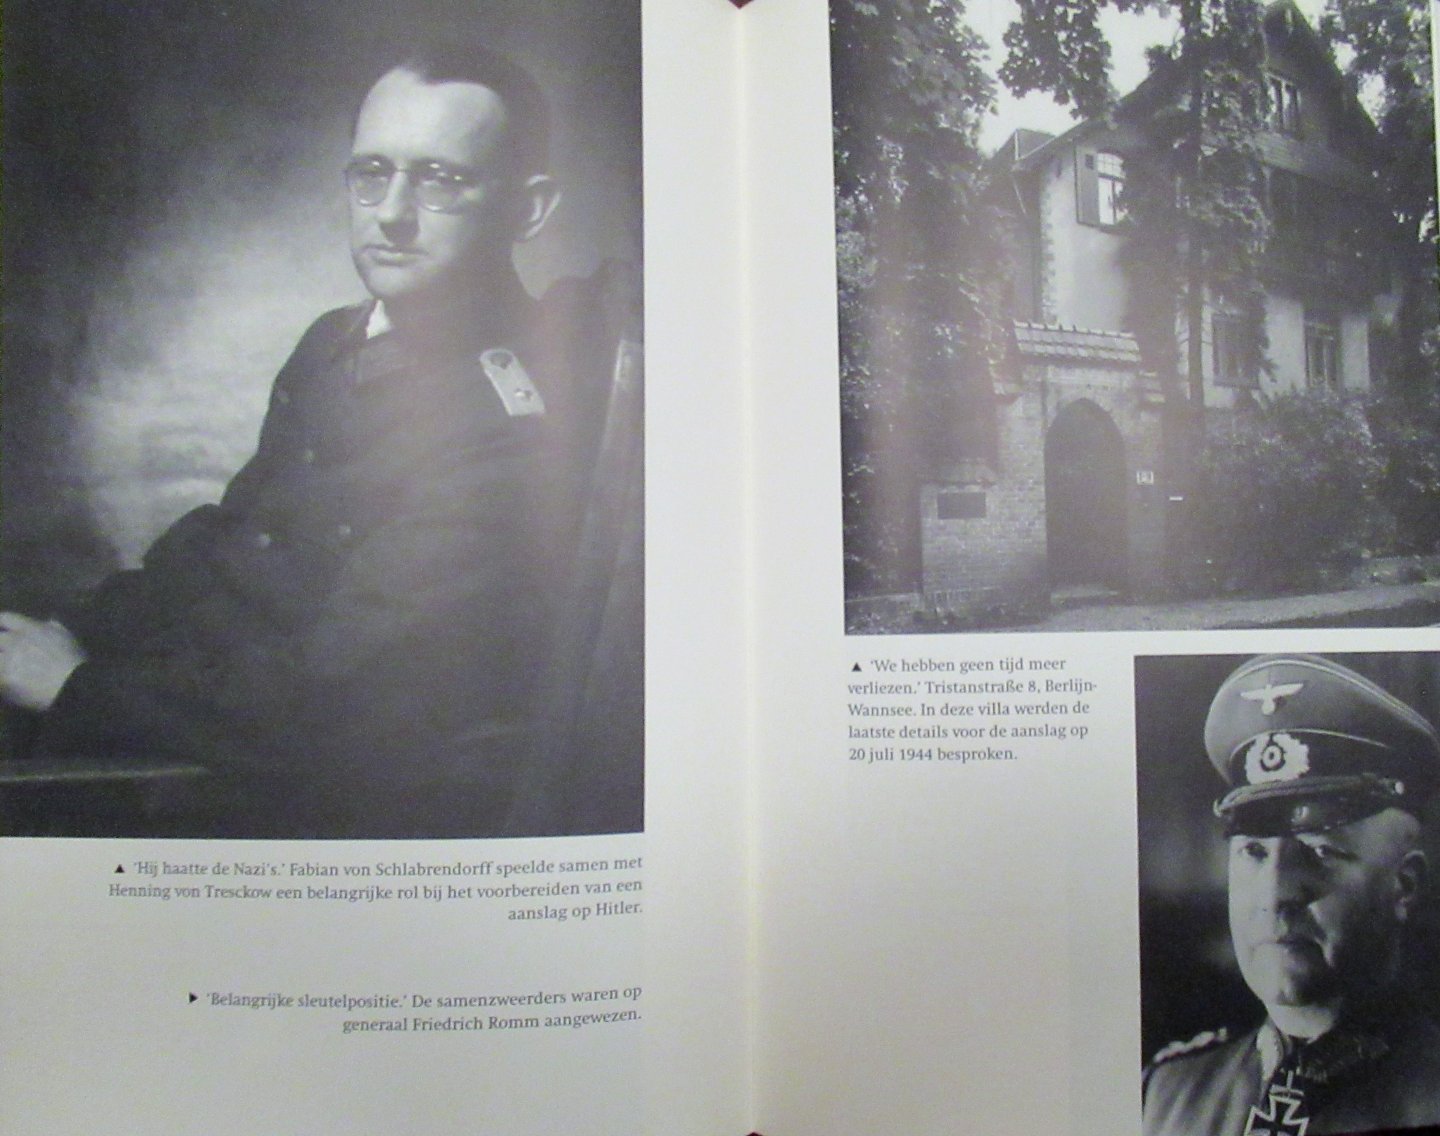 Knopp, Guido - Complot tegen Hitler. Het ware verhaal van de Valkyrie